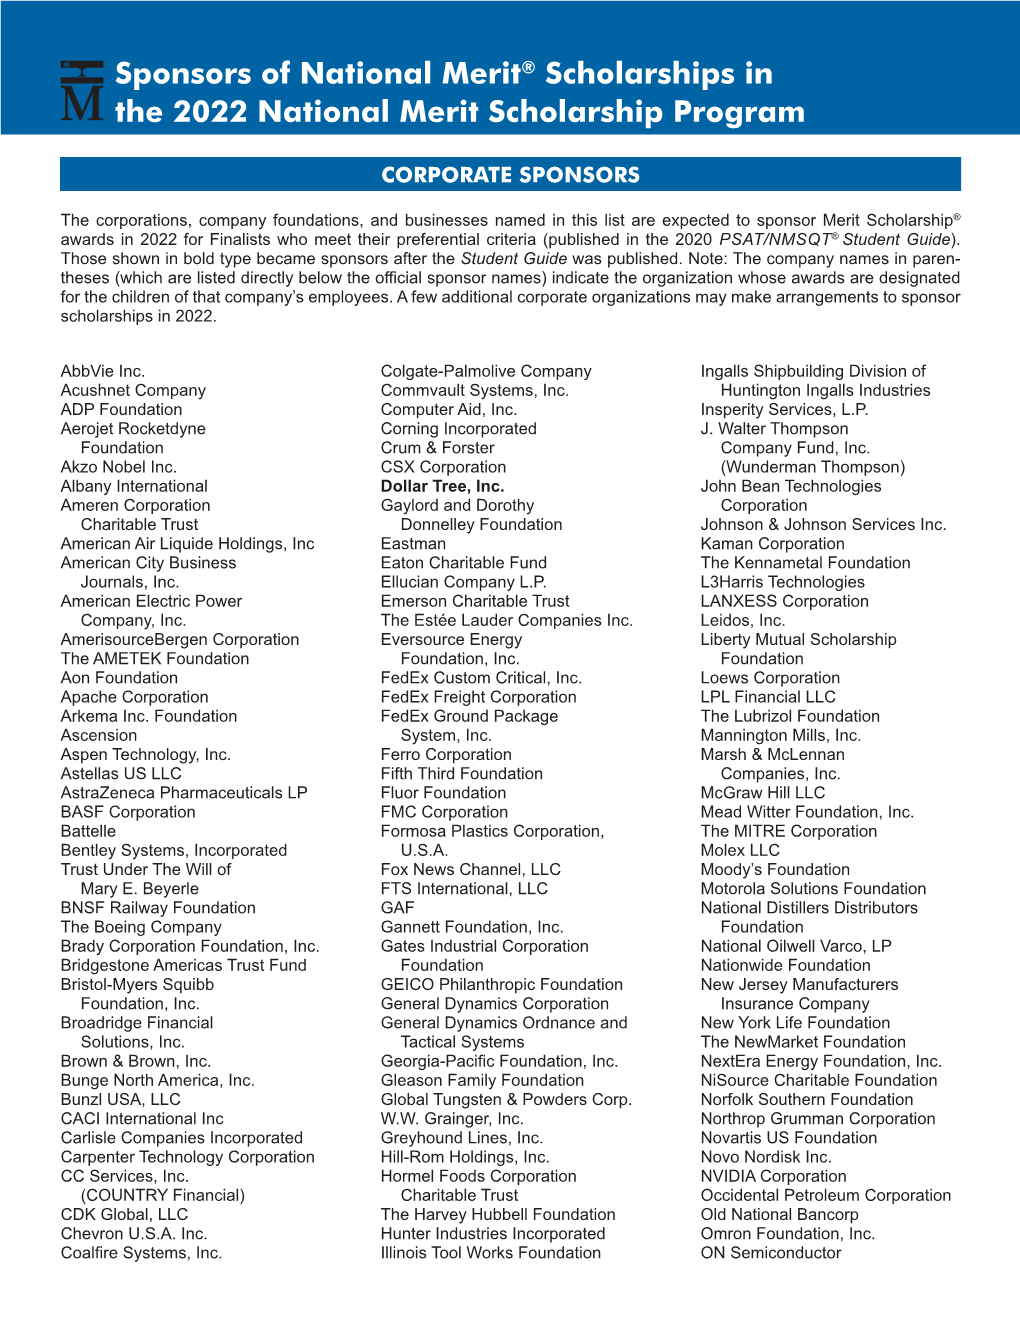 Sponsors of National Merit® Scholarships in the 2022 National Merit Scholarship Program